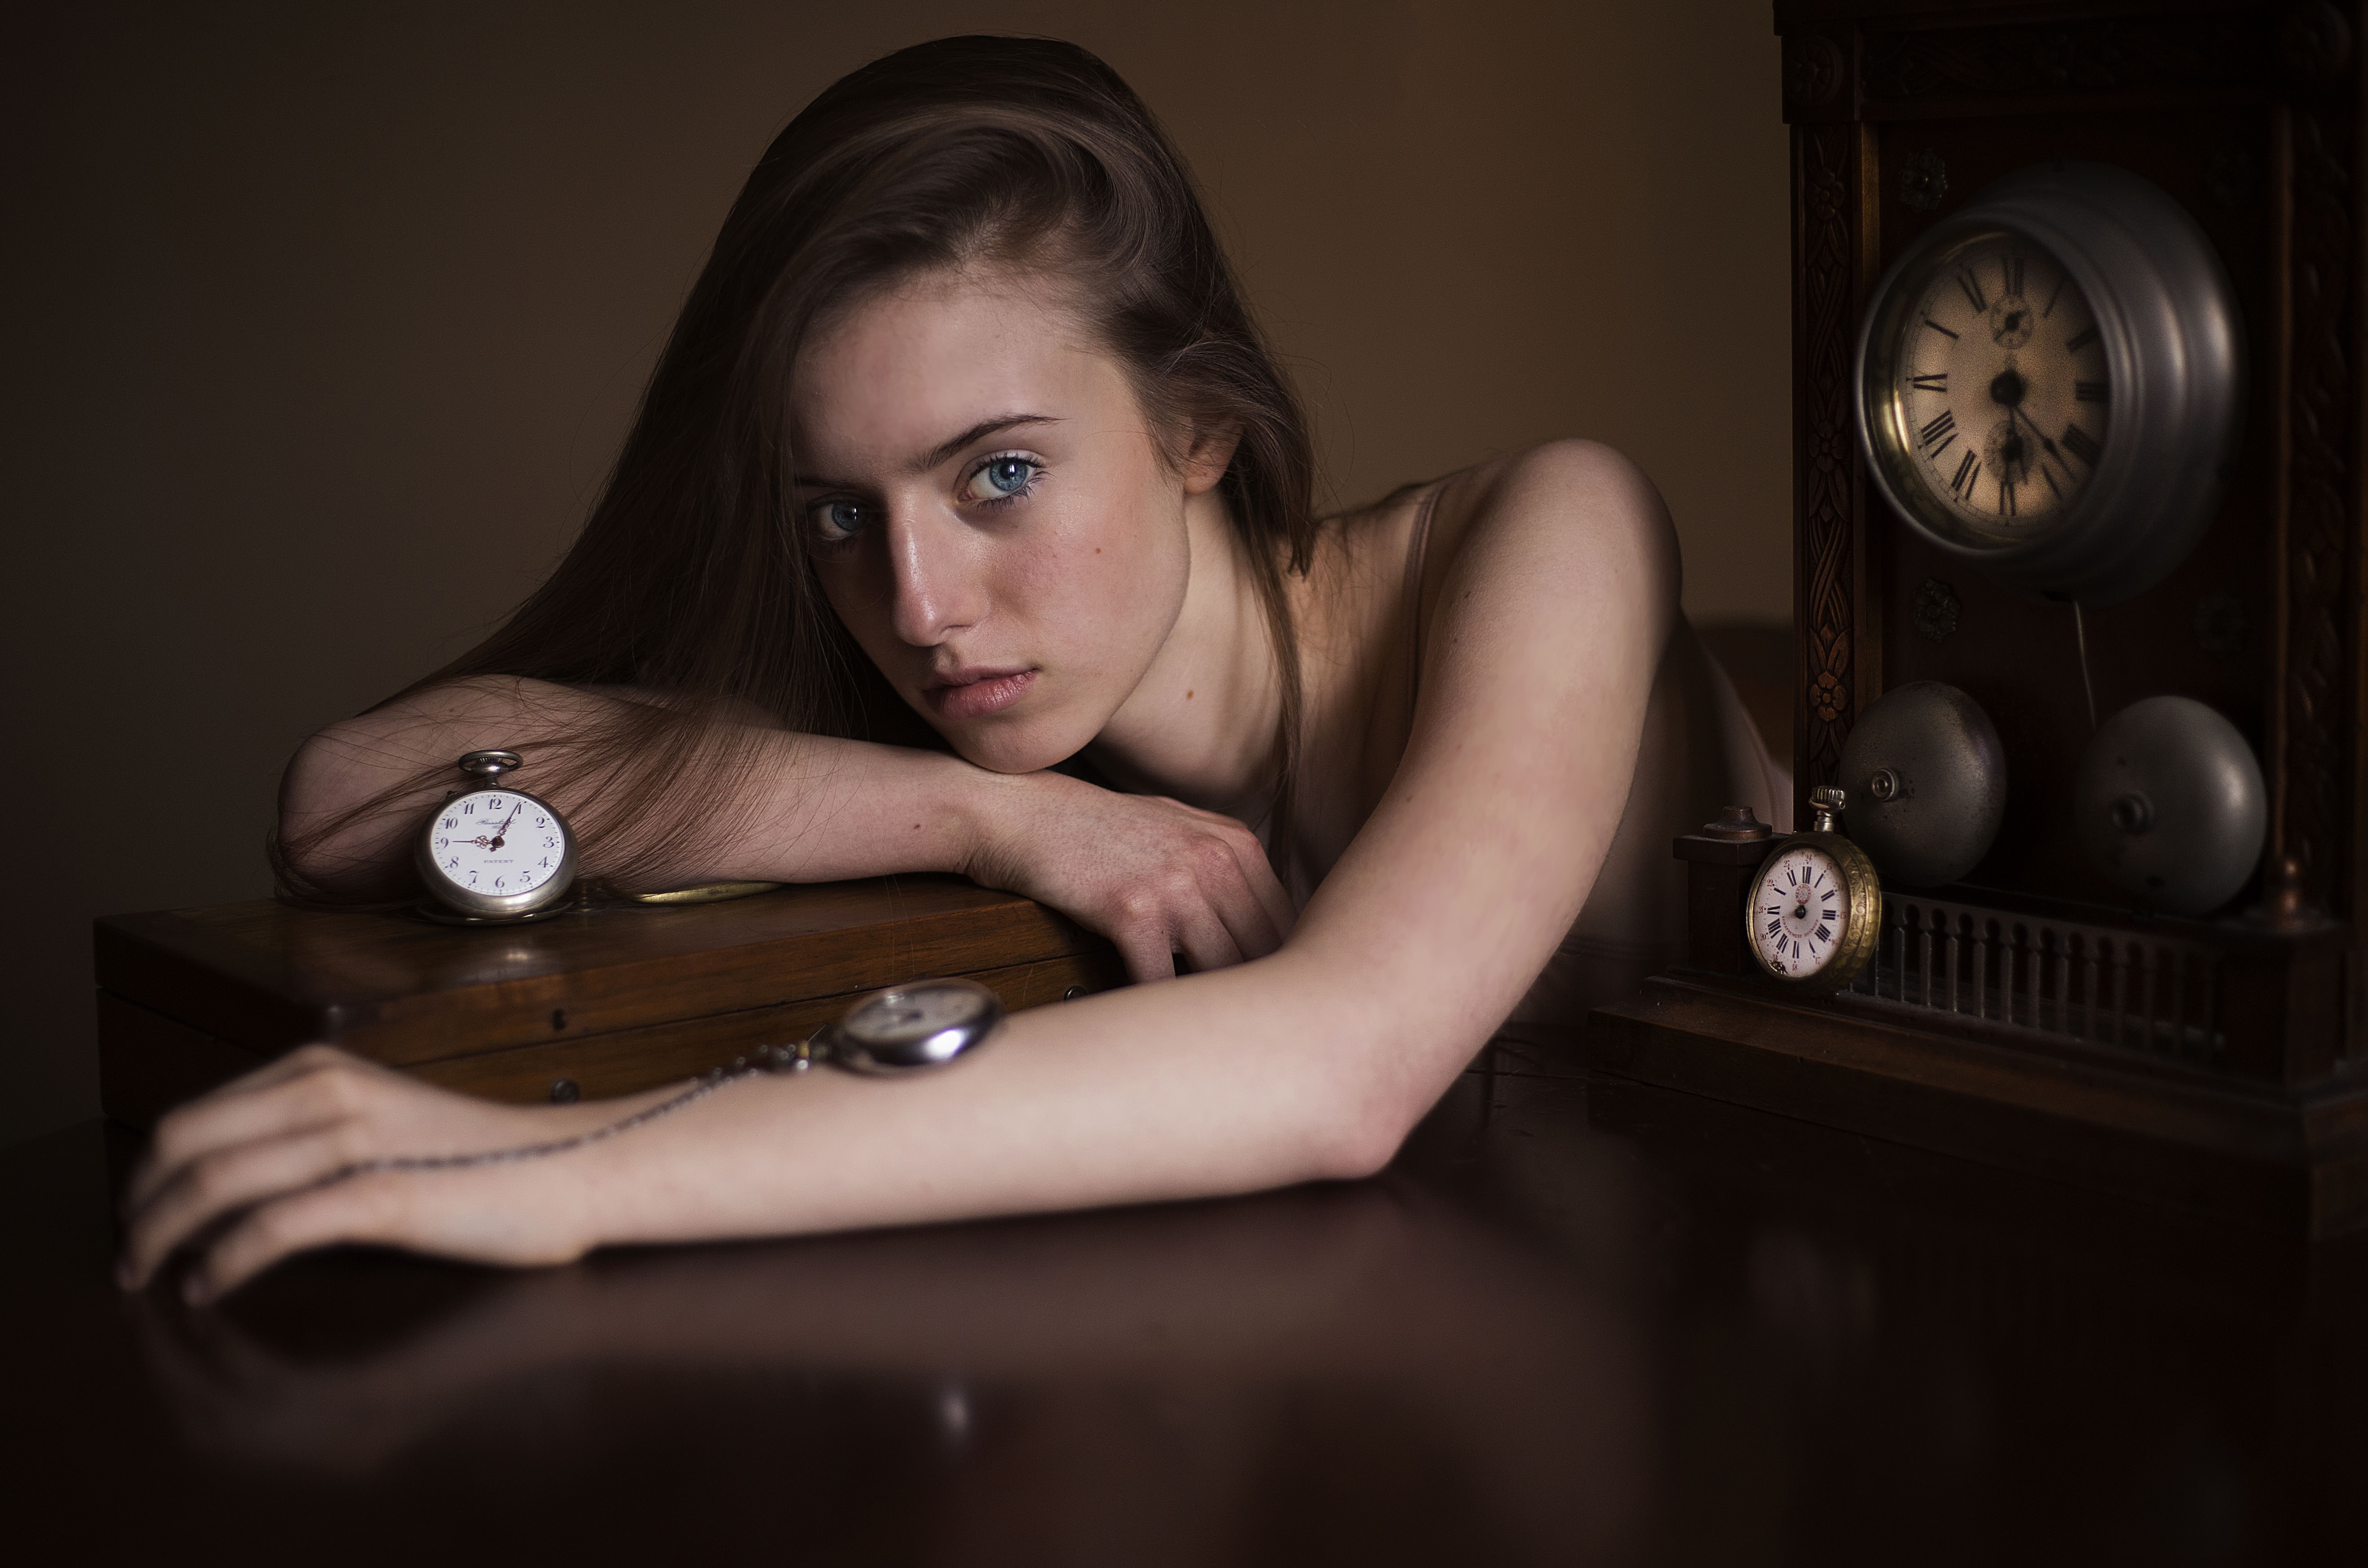 Рџ. Девушка с часами. Фотосессия девушки и часы. Портрет с часами. Девушка с часами модель.